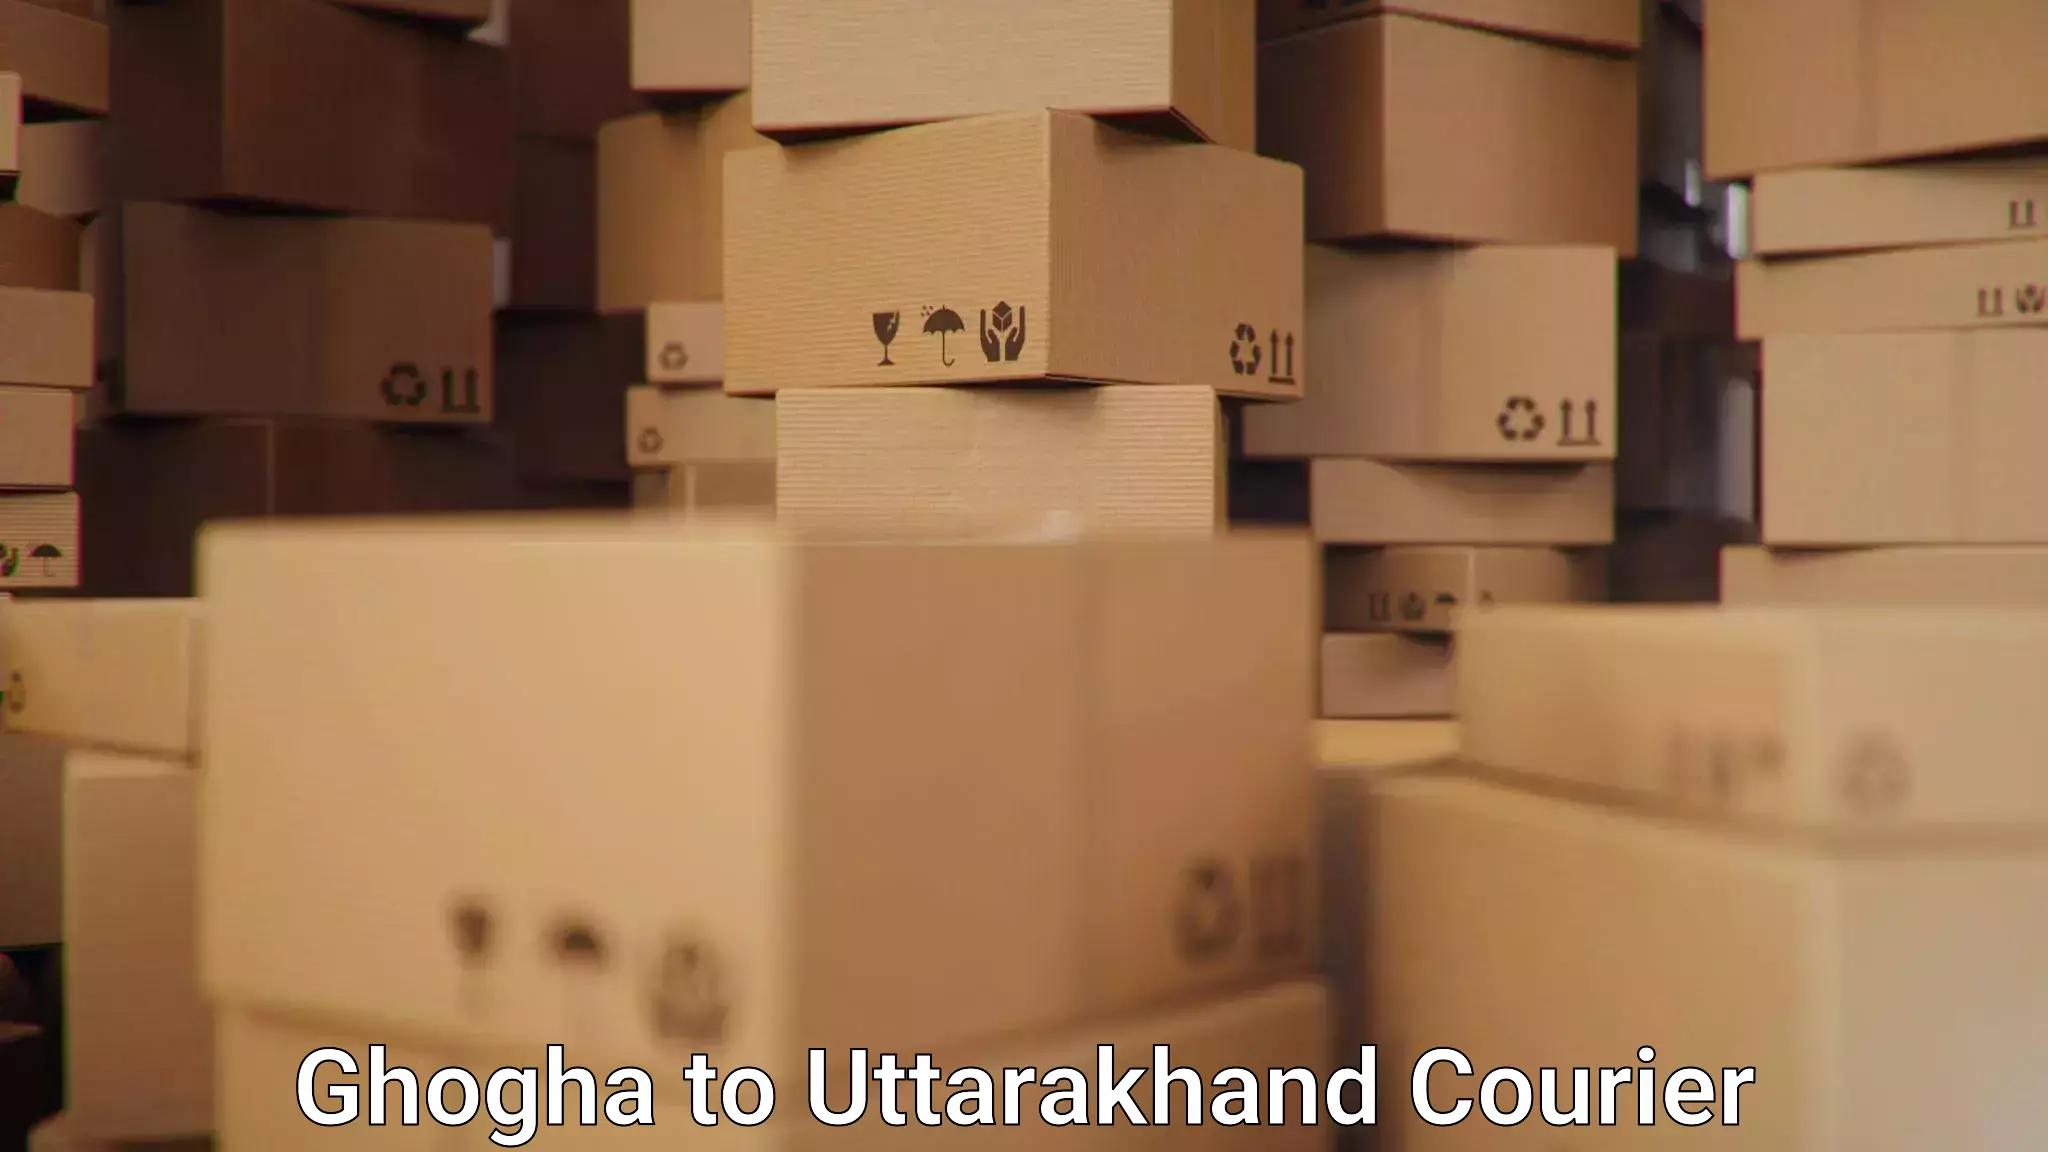 Professional courier handling Ghogha to Kotdwara